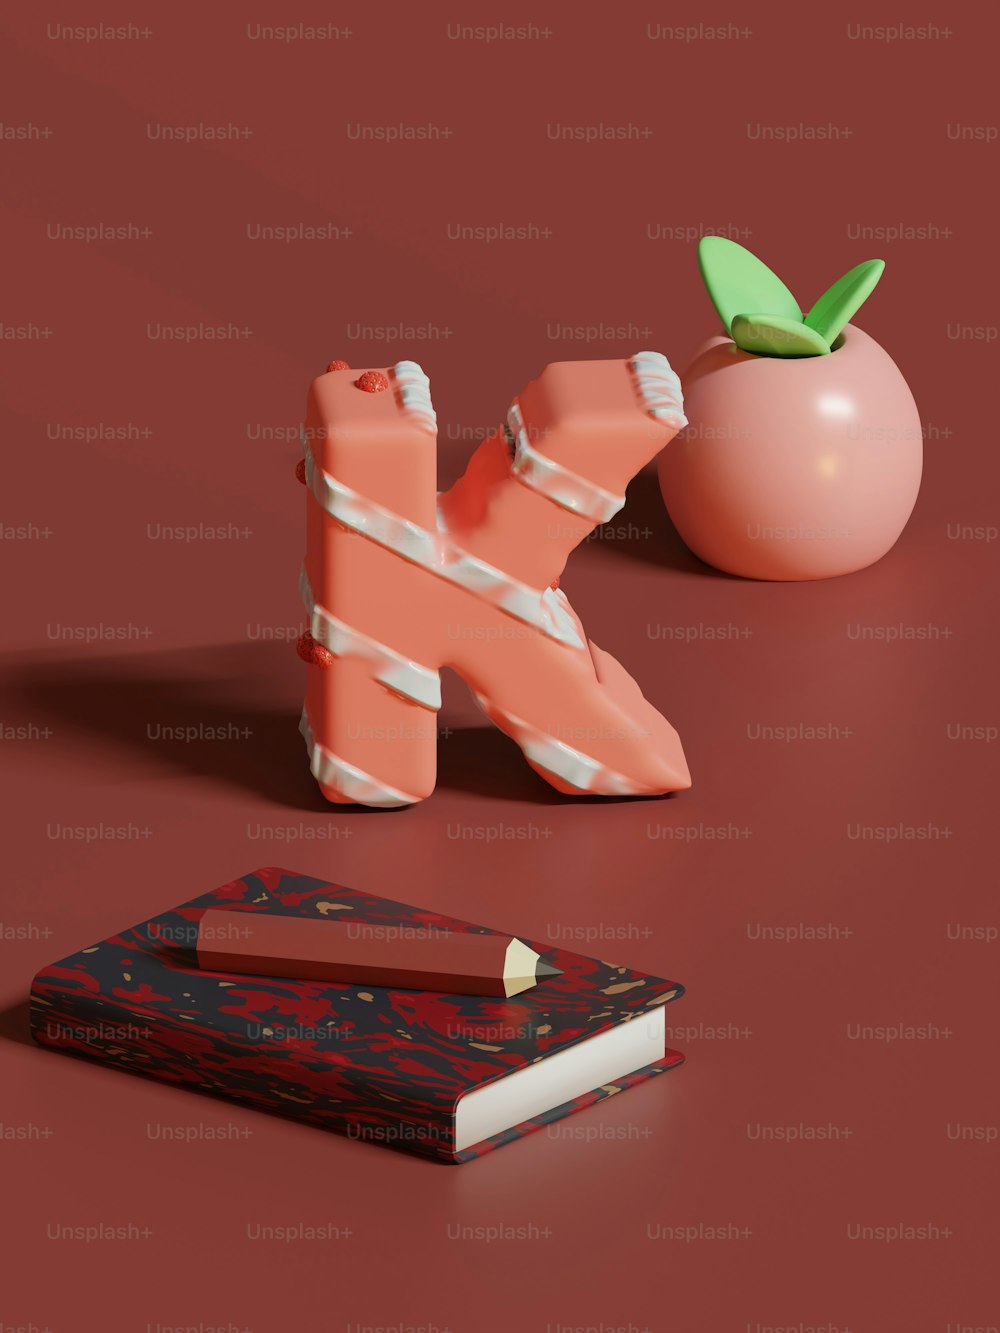 Un libro, un portalápices y una manzana se sientan sobre una superficie roja